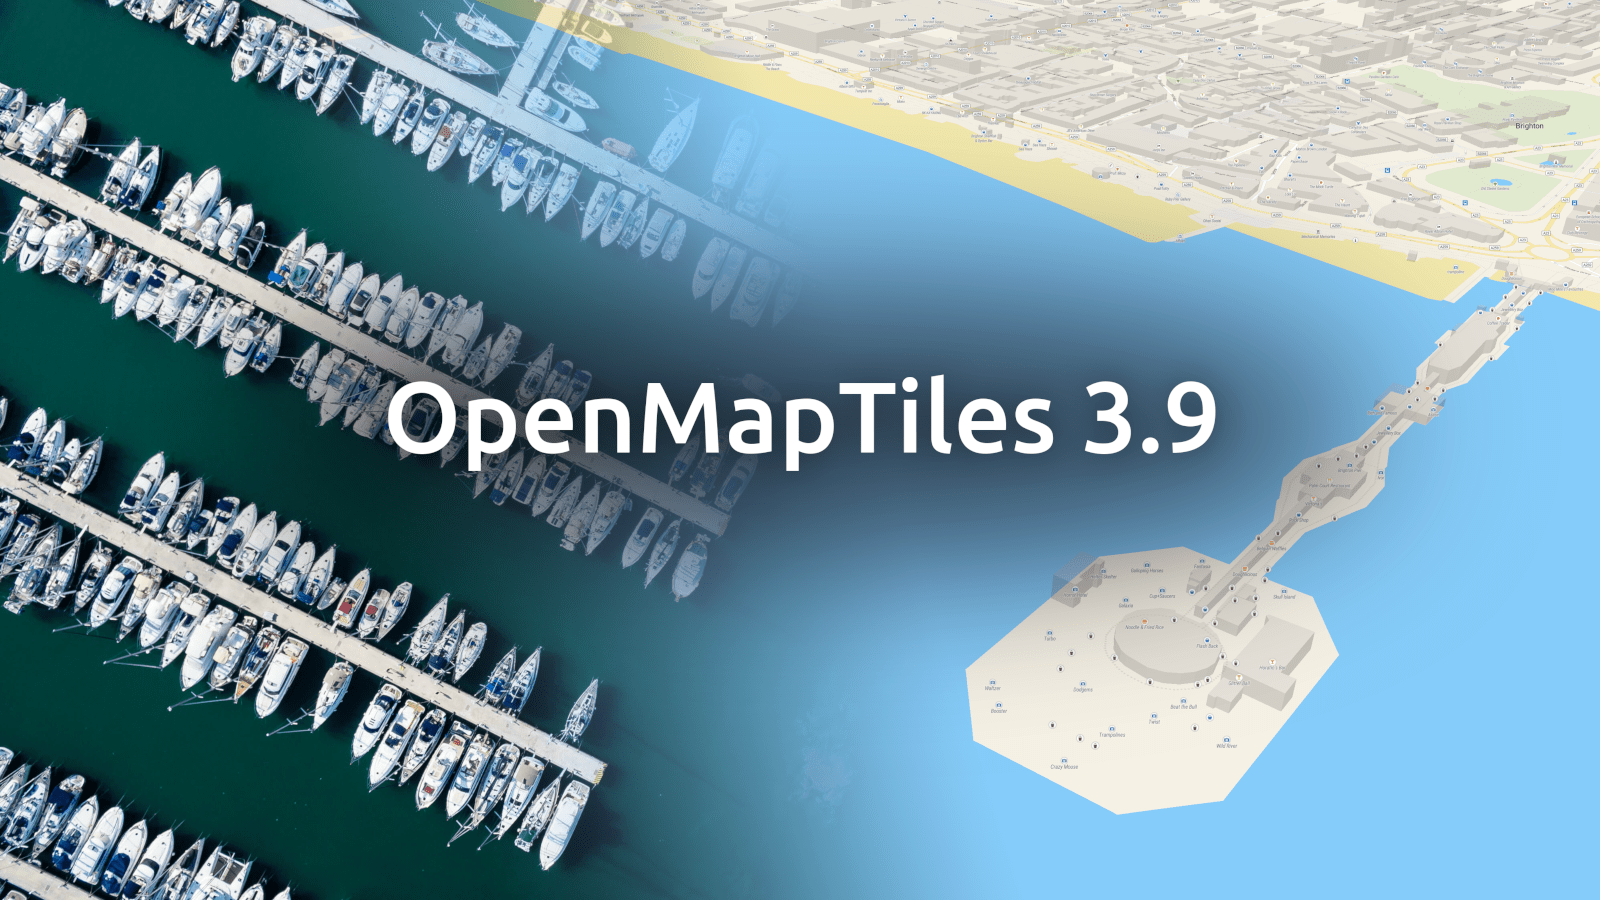 OpenMapTiles 3.9 con immagini di banchine, moli e nomi di strade multilingue